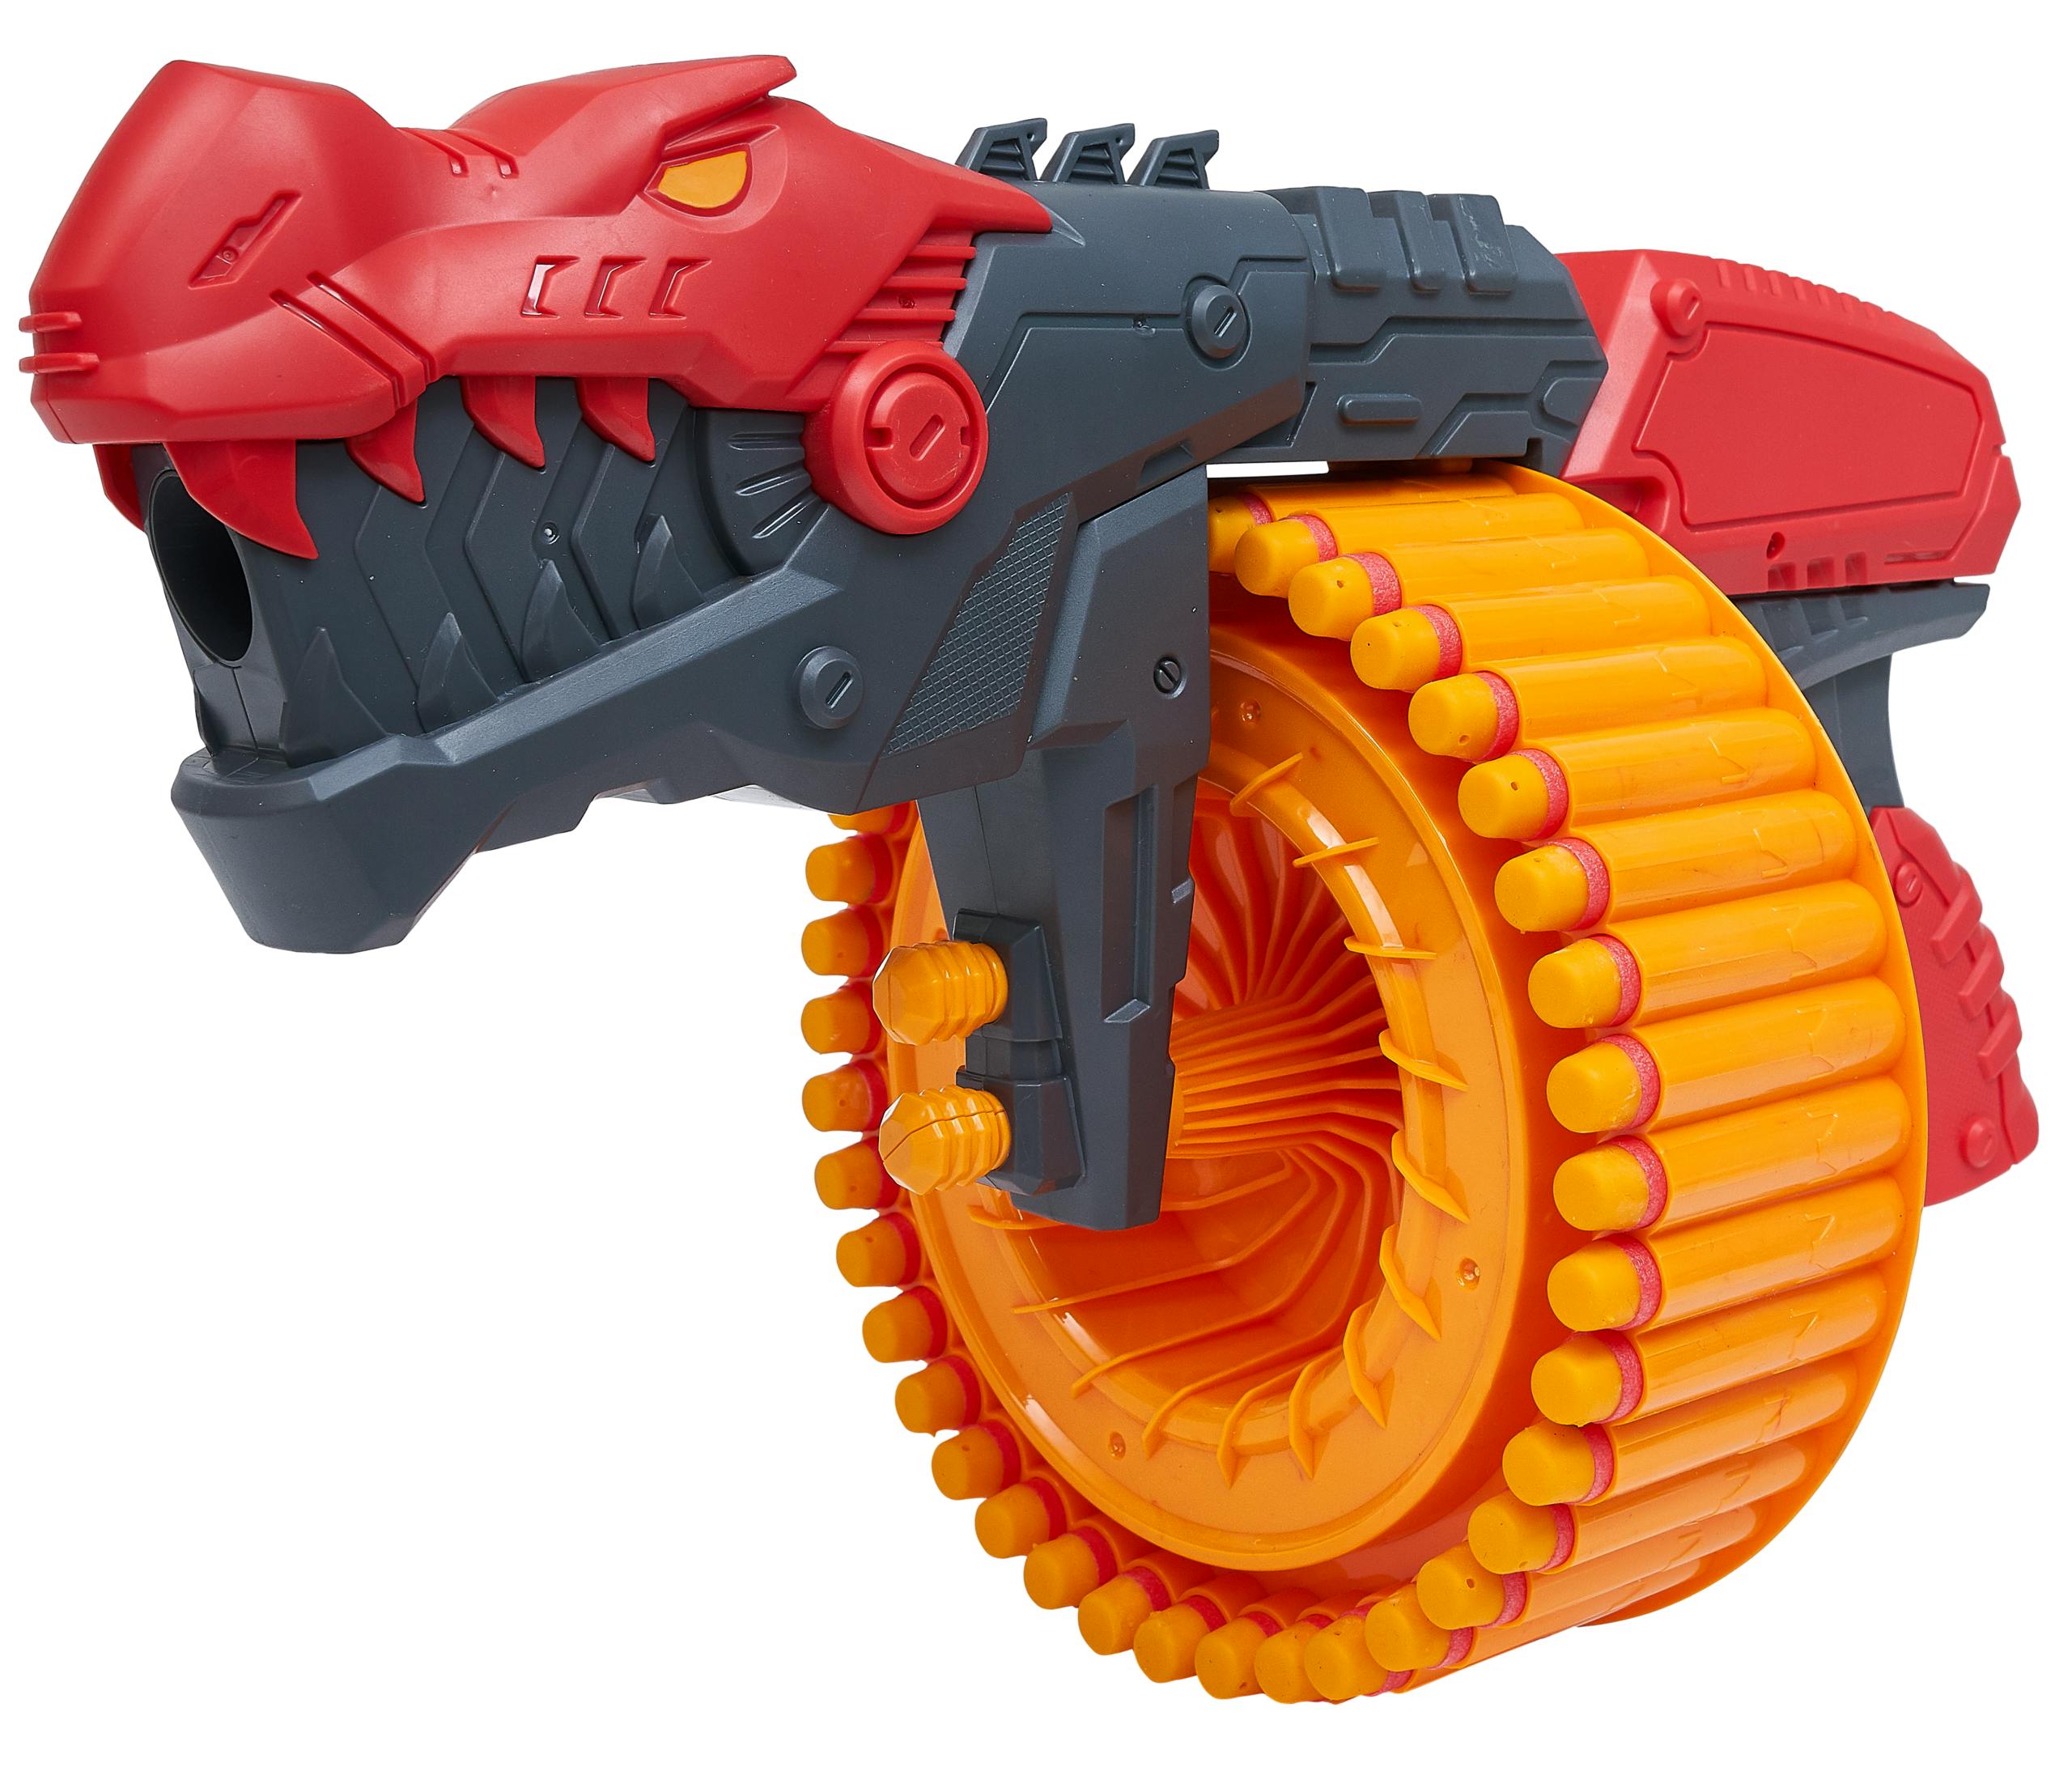 Dino Speelgoedgeweer Met 40 Pijltjes - Rood